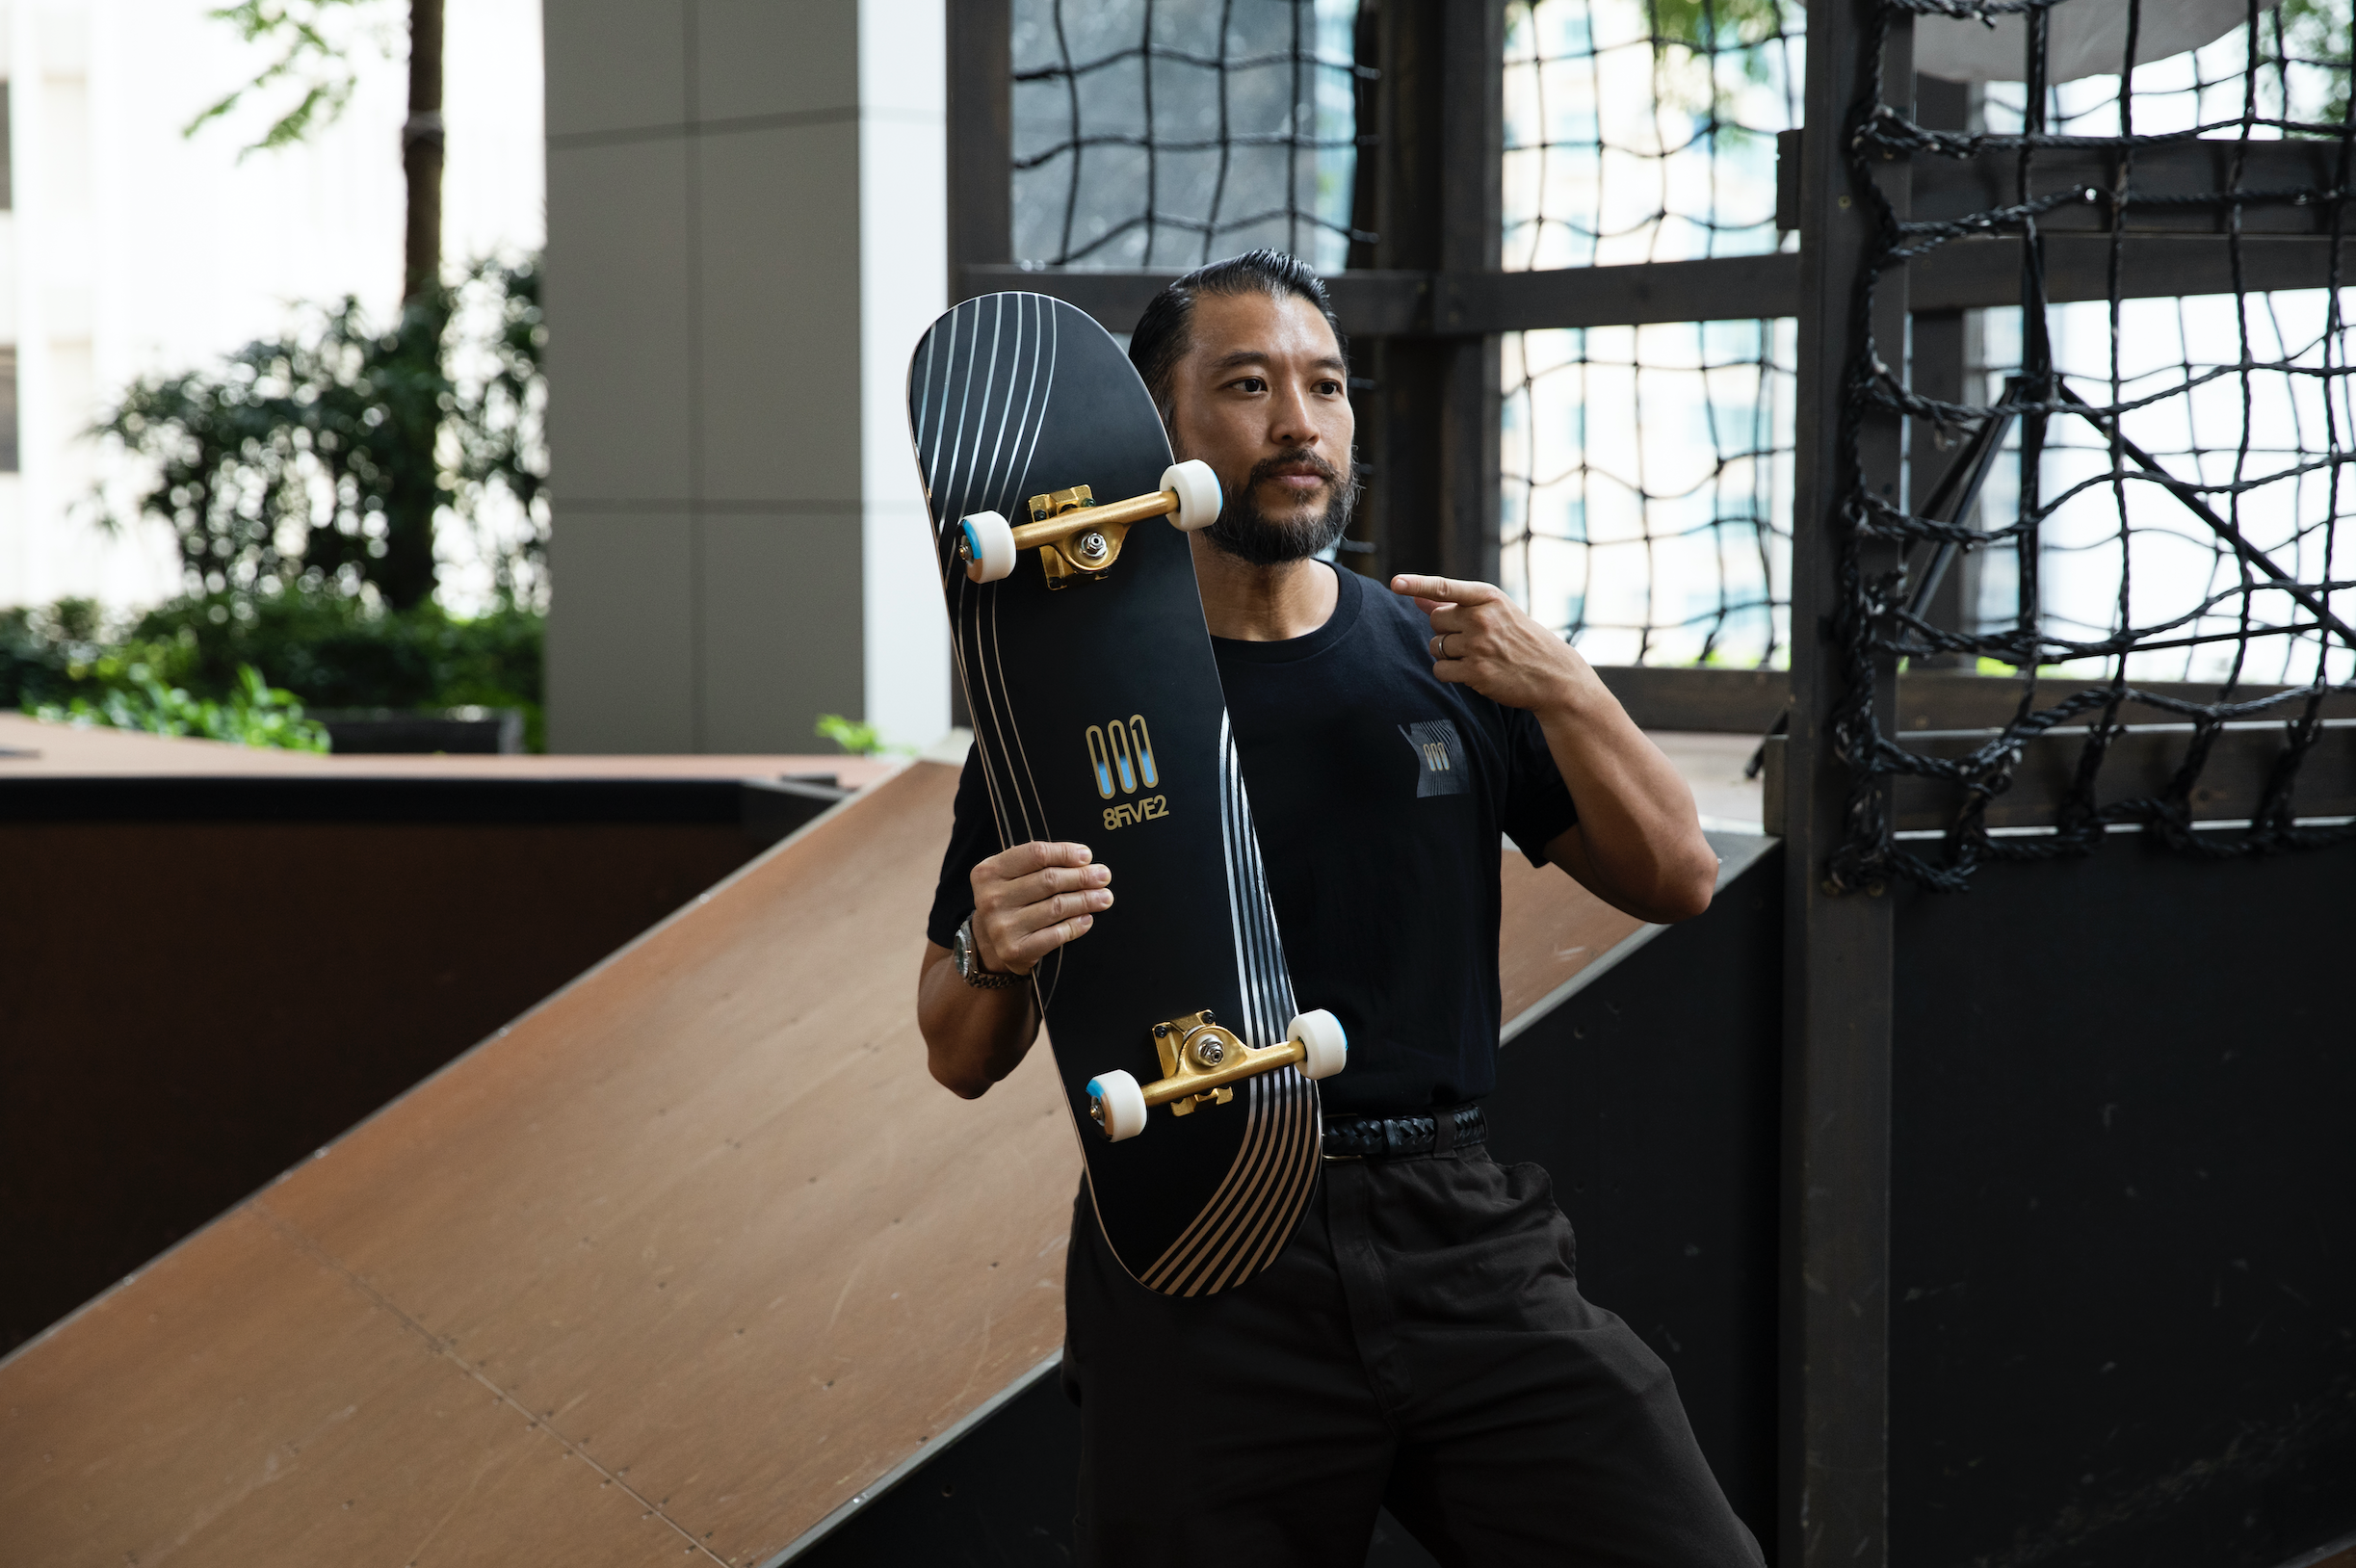 滑出時尚快感｜Durex x 8FIVE2合辦滑板界年度矚目比賽，宣揚「潤滑」安全快感